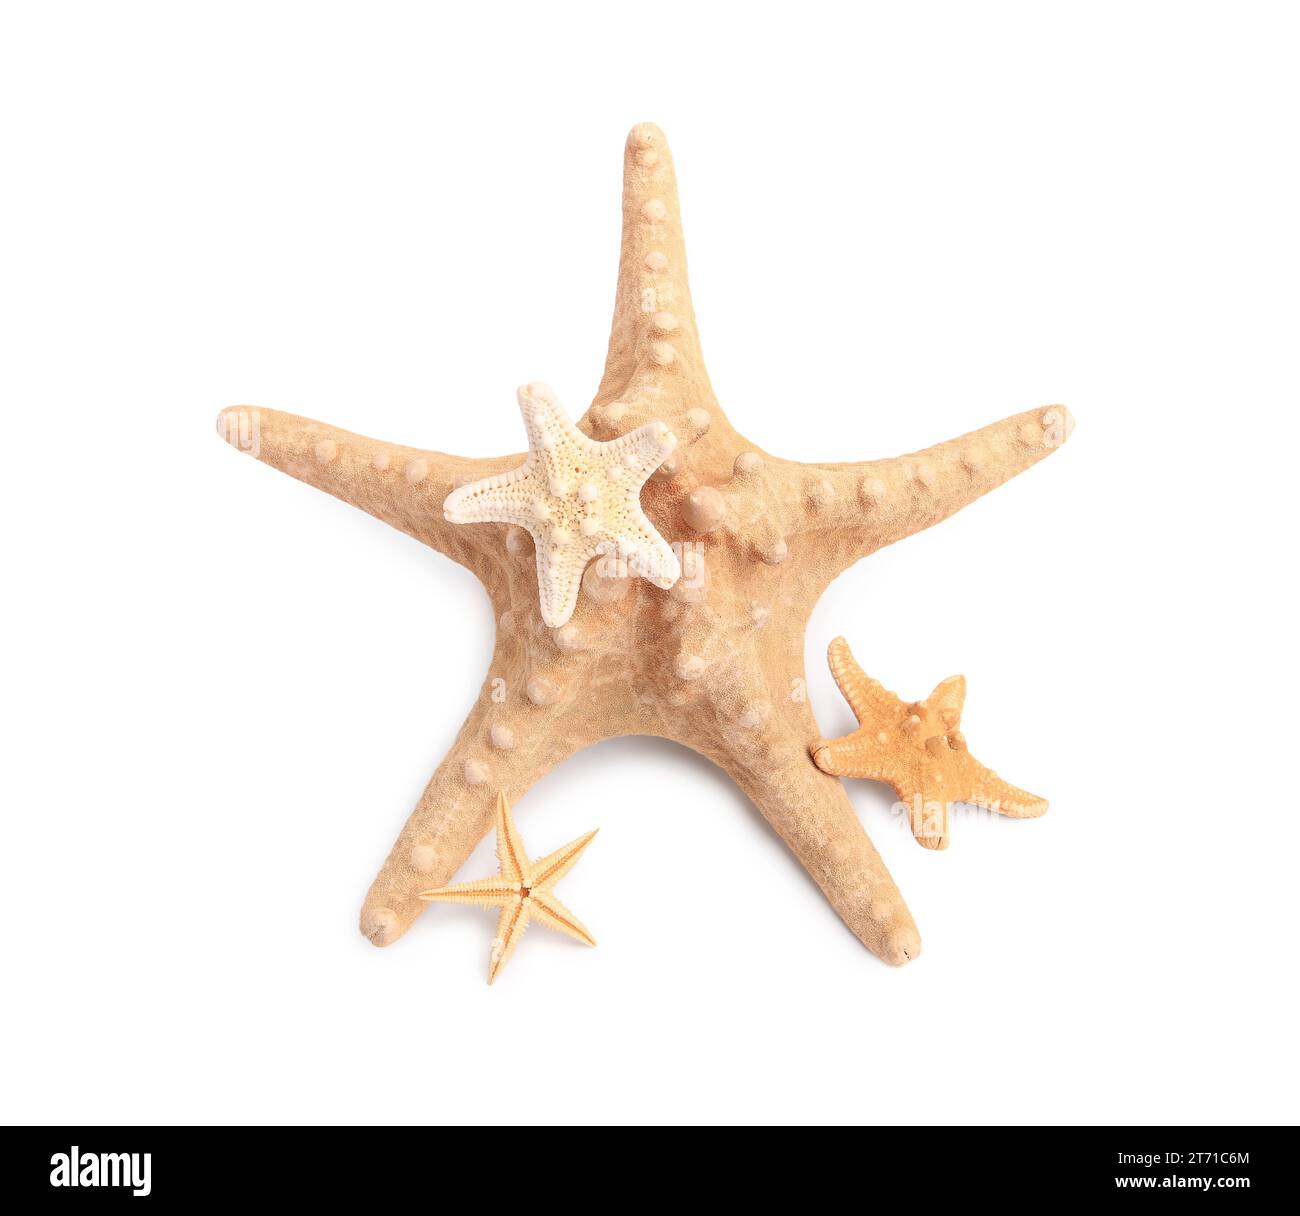 starfish starfishes star fish star fishes ocean life sea sea life creature  Stock Photo - Alamy